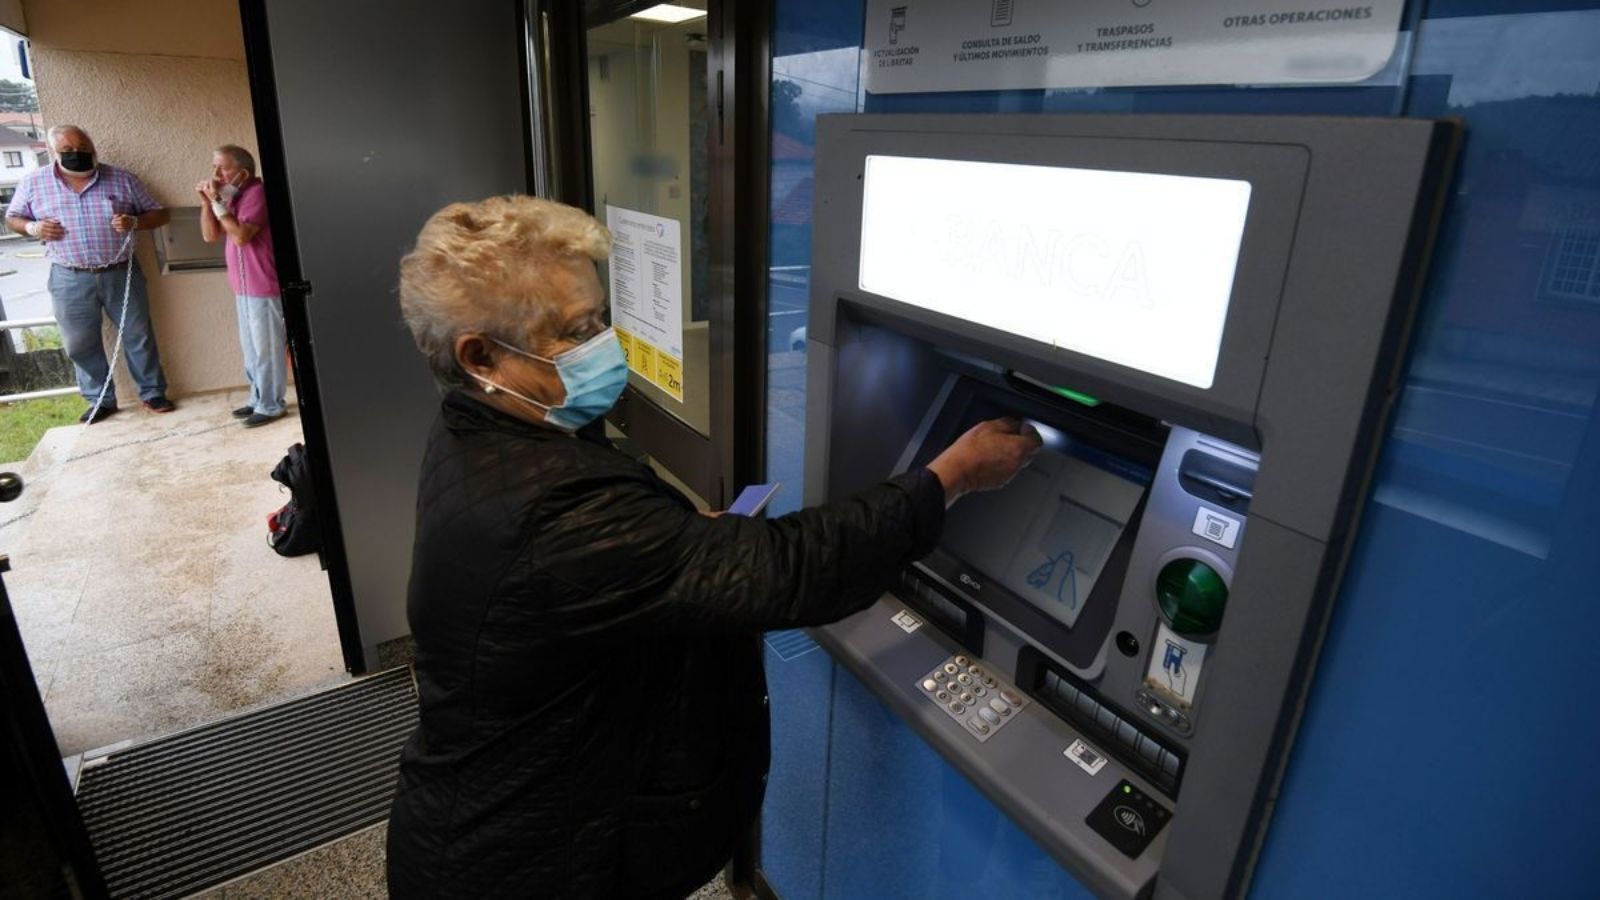 La banca retrasa la publicación del informe que evalúa si ha mejorado la atención a los mayores